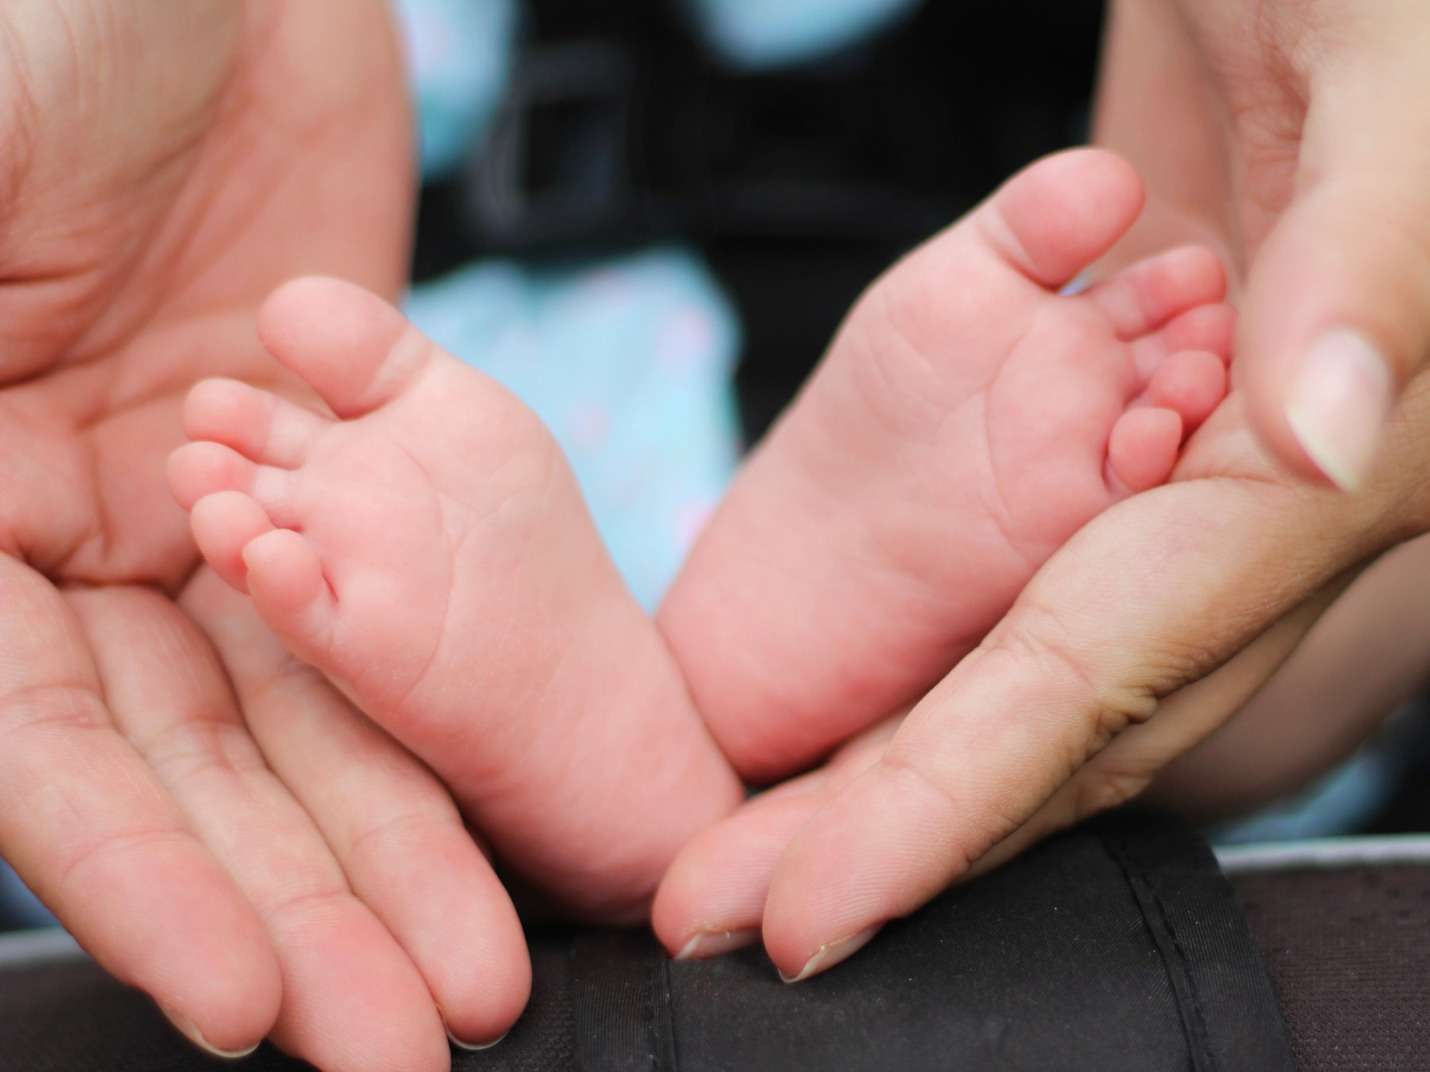 Small feet of a newborn